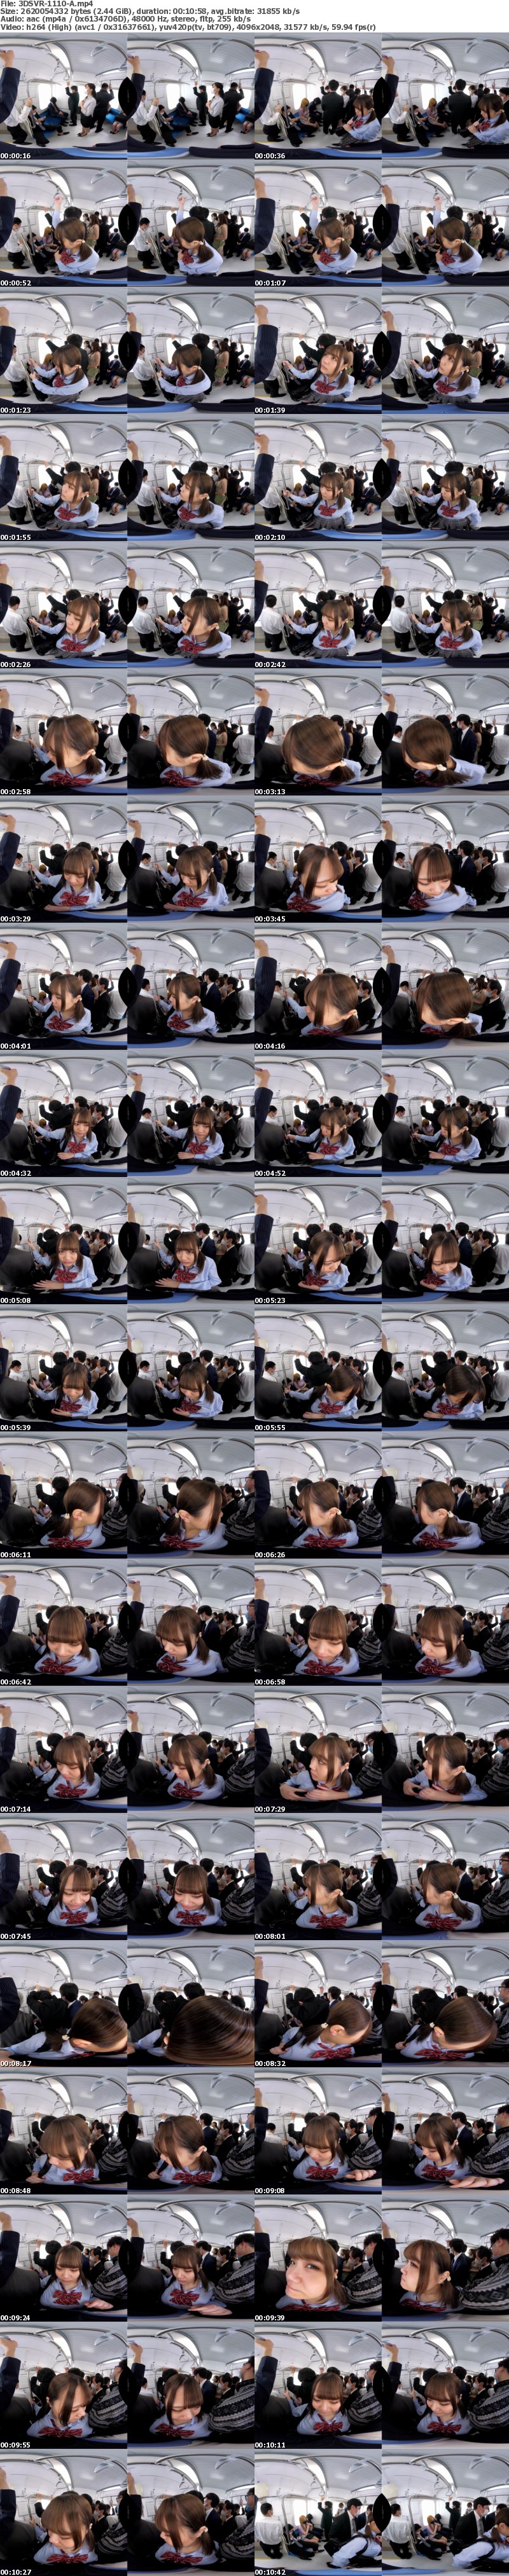 (VR) 3DSVR-1110 満員電車で目の前には巨乳の女性！不可抗力でおっぱい当たっちゃうVR